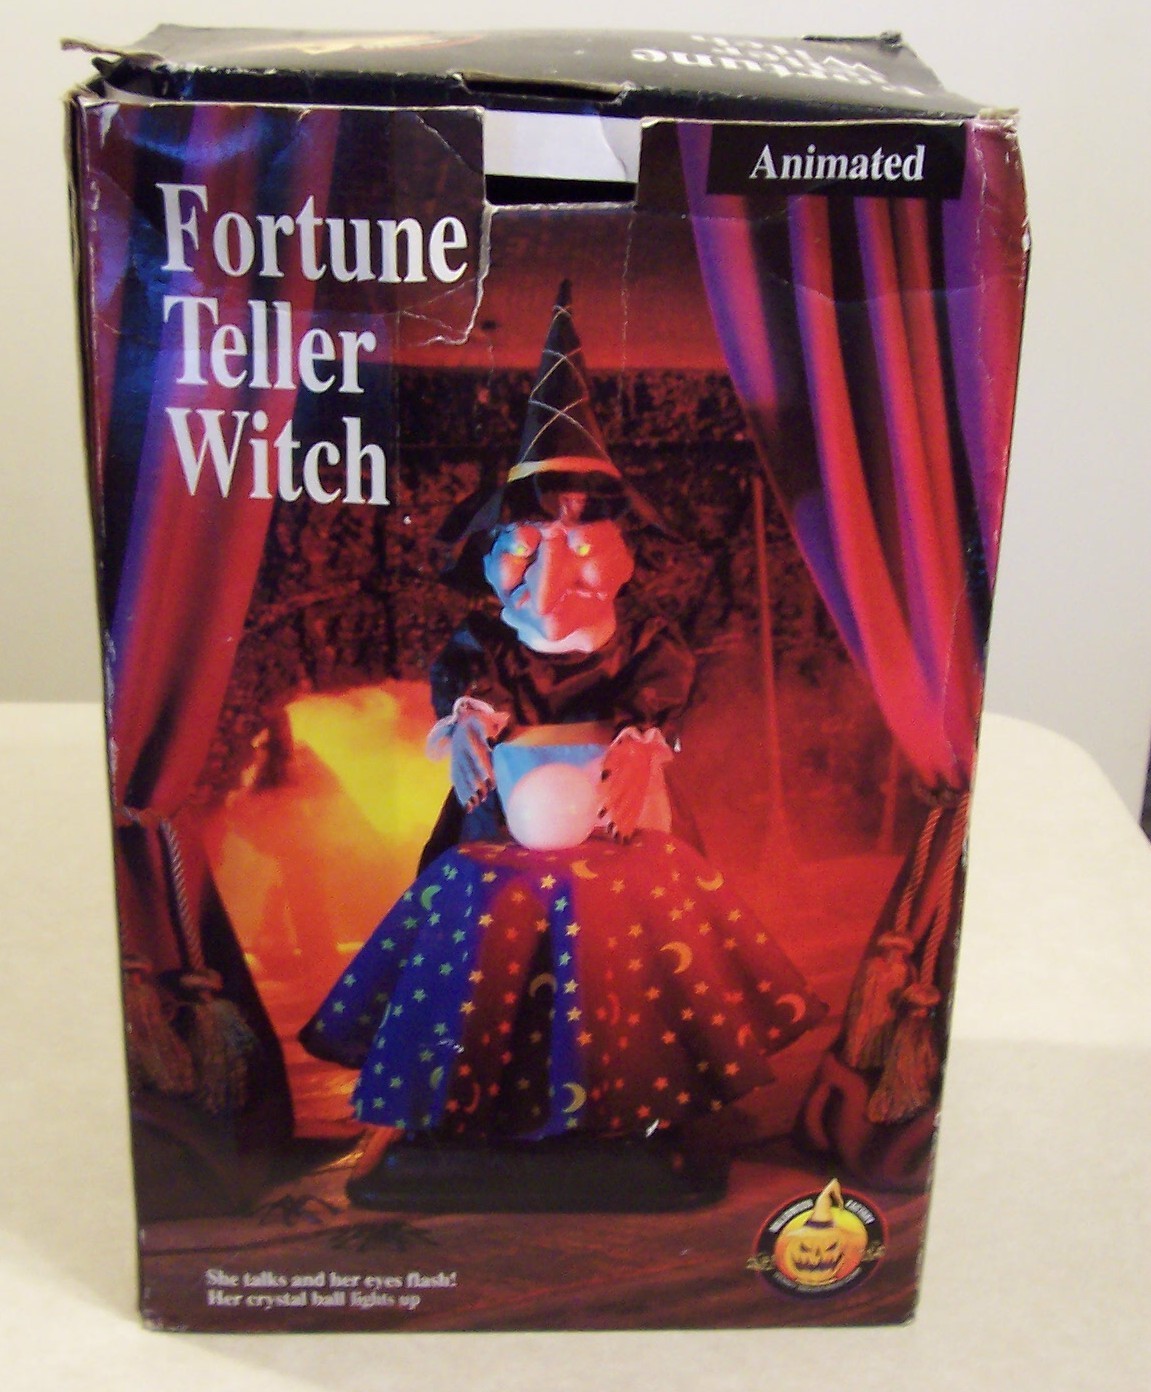 Vintage Fortune Teller dolls